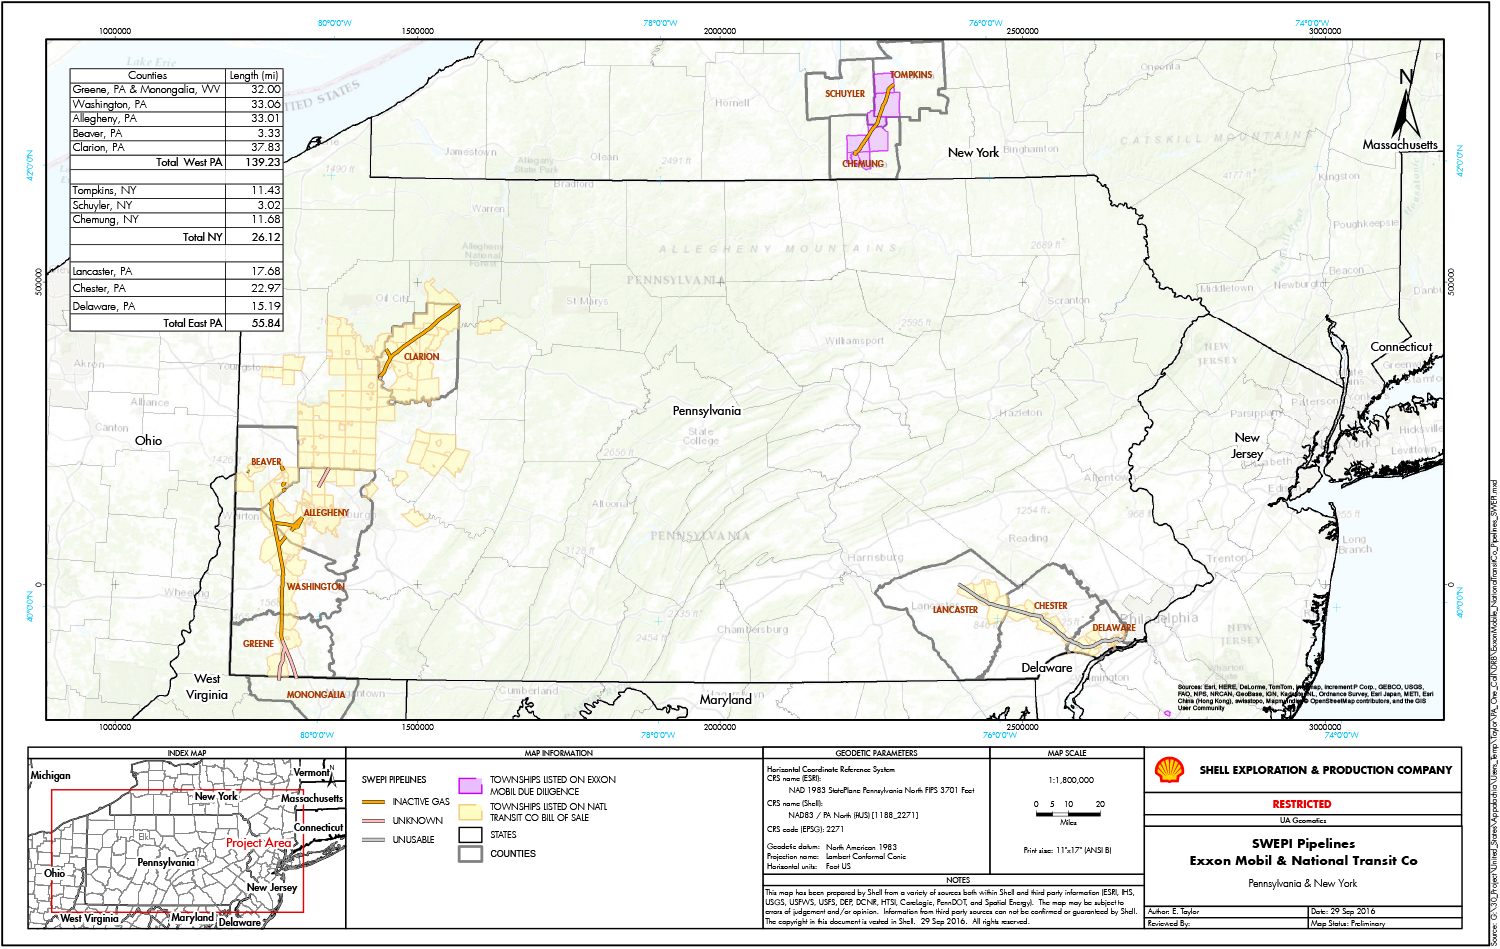 SWEPI National Transit Pipeline Asset Map (Source: EnergyNet)